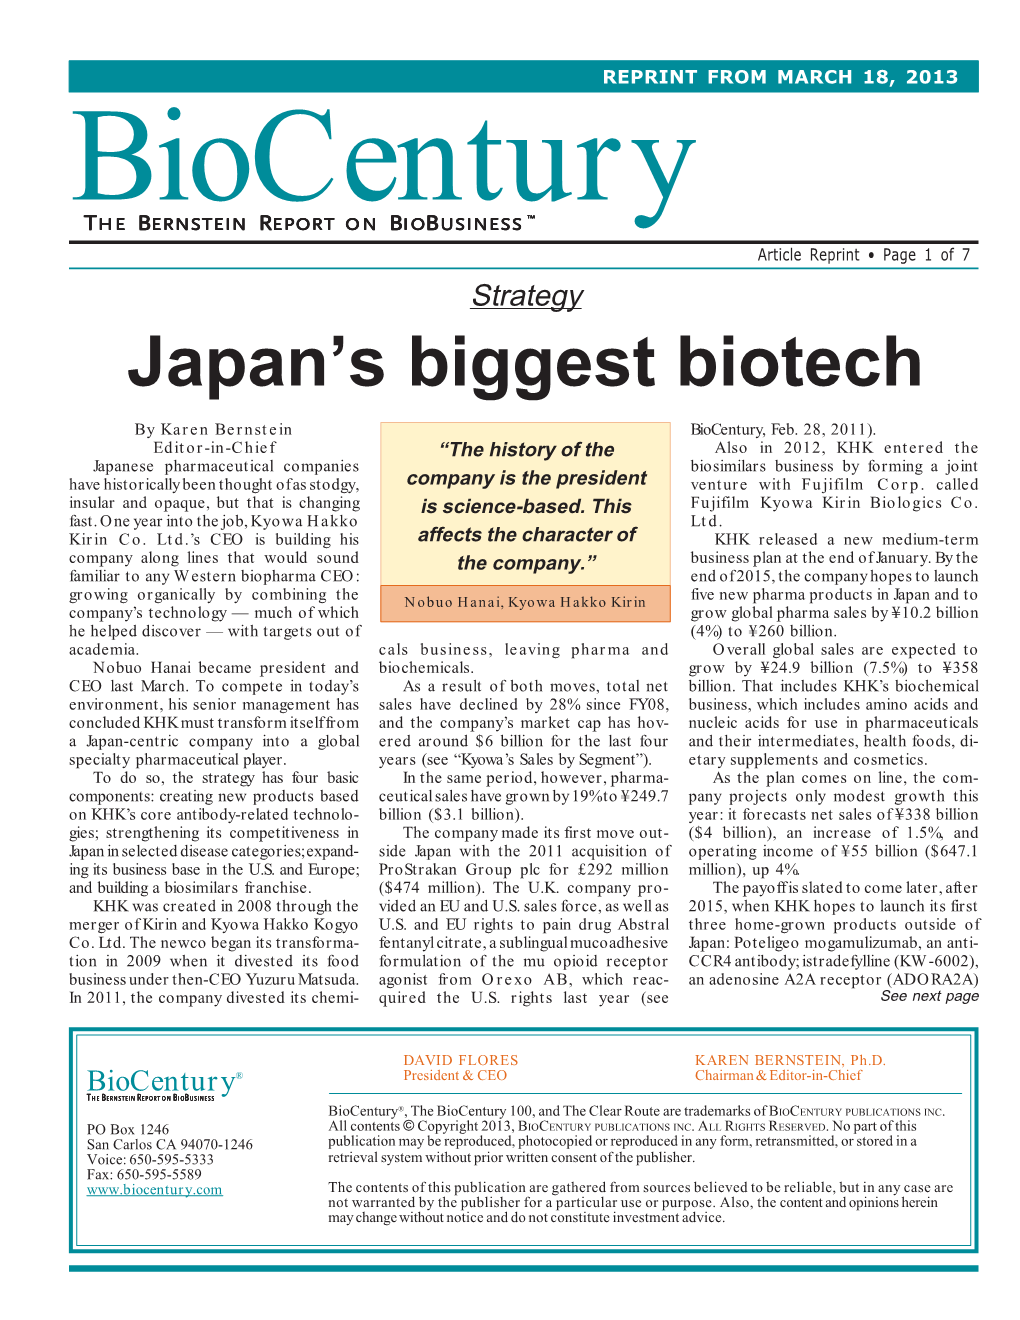 Japan's Biggest Biotech